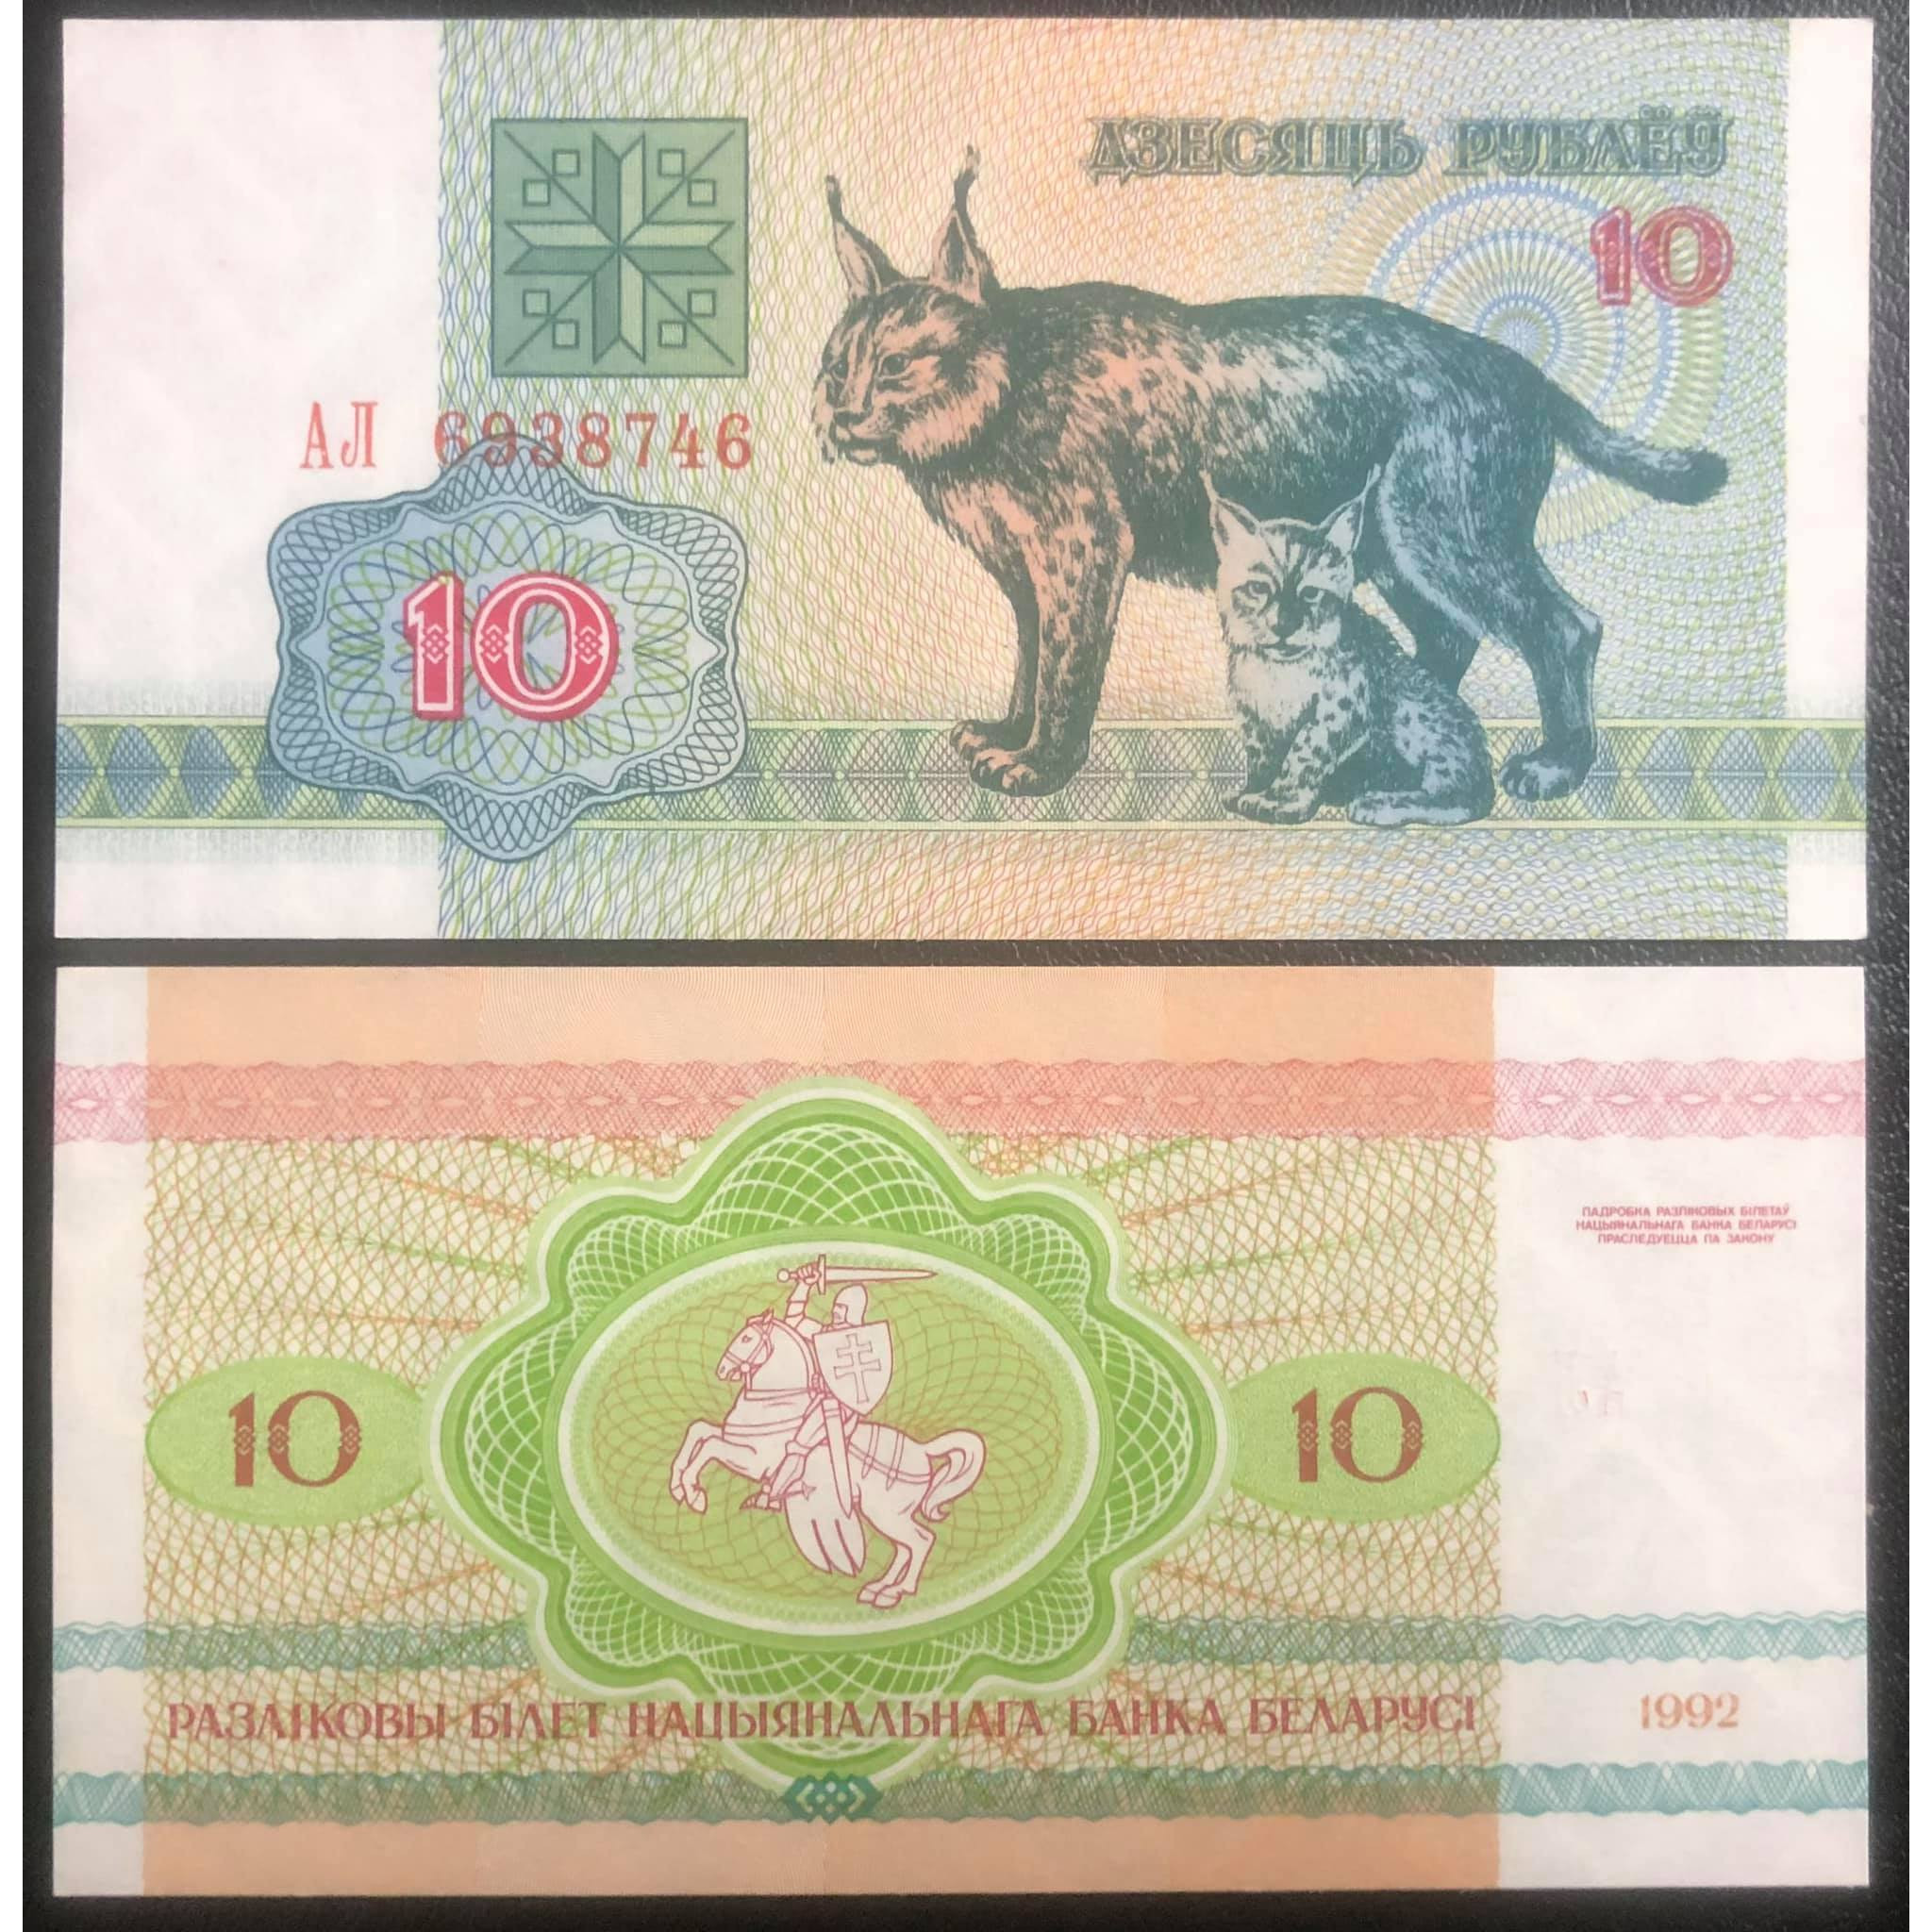 Tờ tiền con Mèo của Belarus 5 Rublei, tuổi Mão sưu tầm